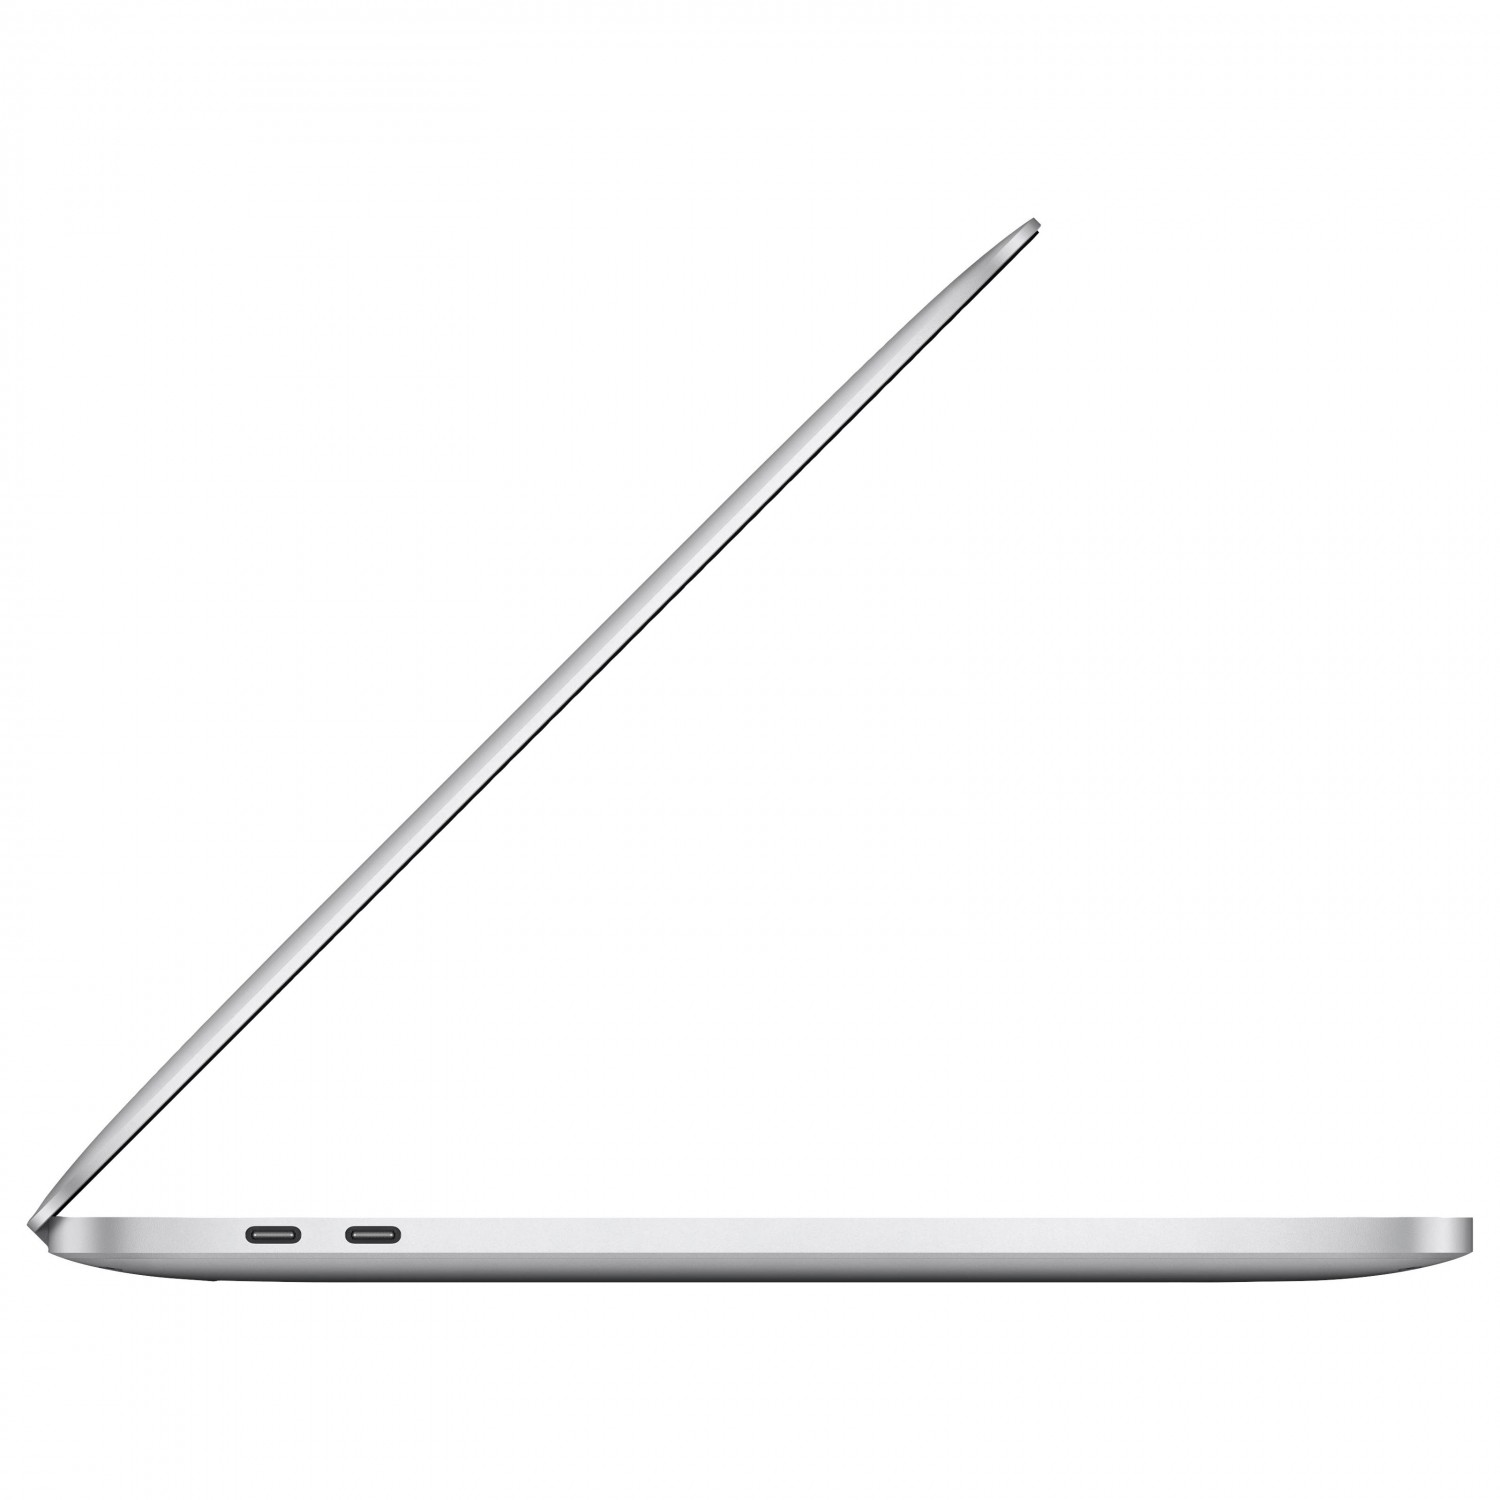 لپ تاپ Apple MacBook Pro 13 2020 CTO - Silver - B-4